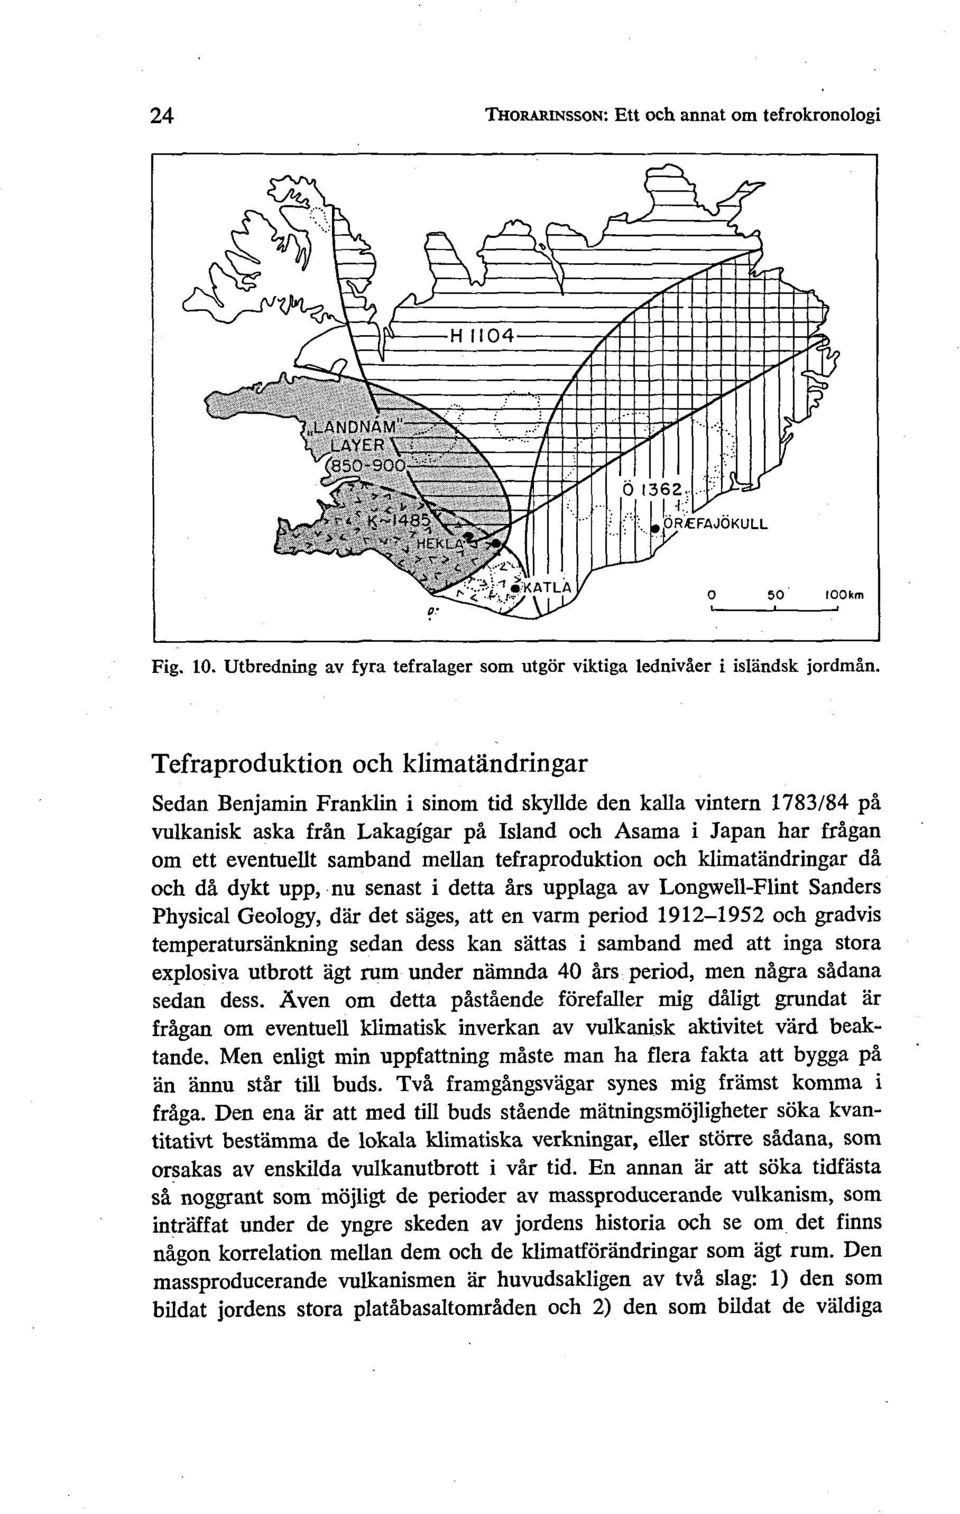 samband mellan tefraproduktion och klimatandringar då och då dykt upp, nu senast i detta års upplaga av Longwell-Flint Sanders Physical Geology, dår det sages, att en varm period 1912-1952 och